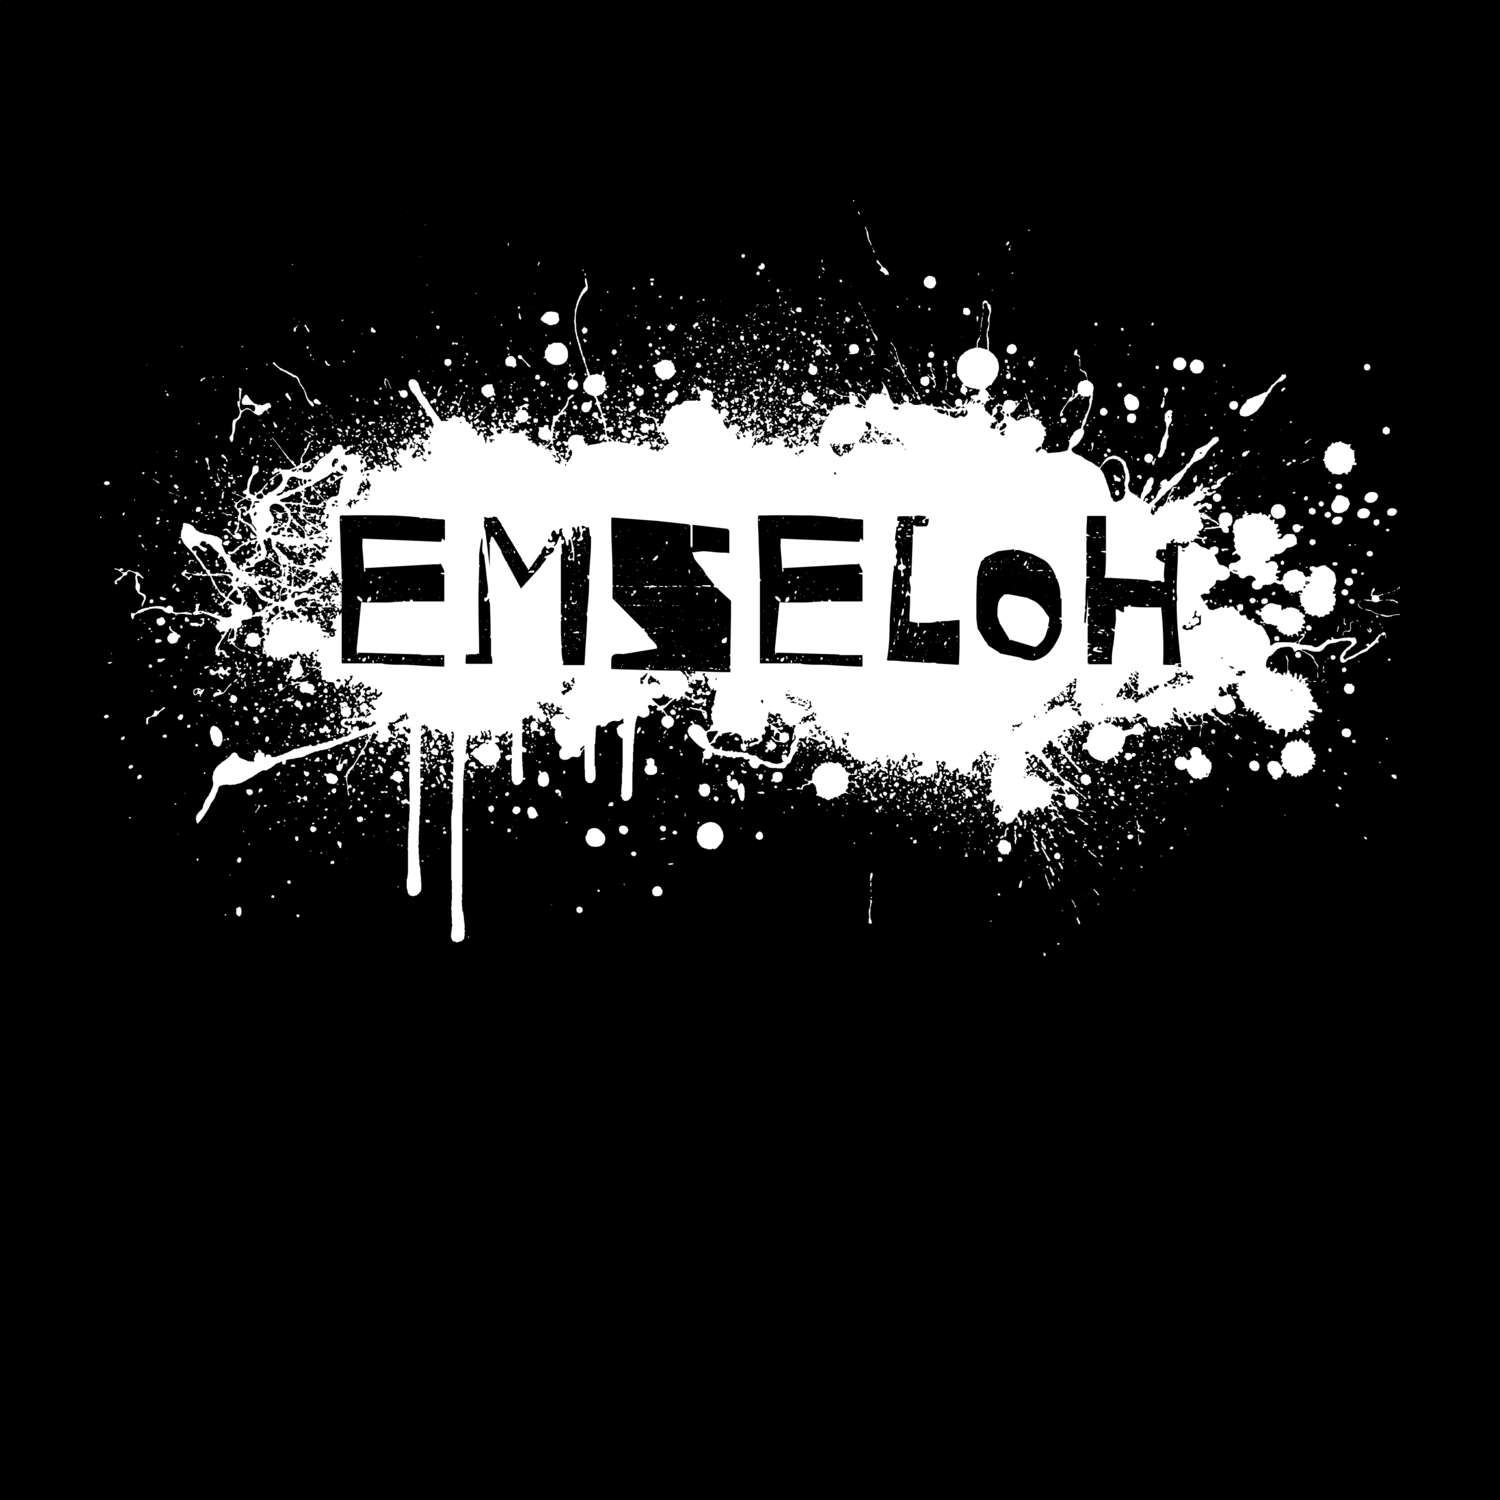 Emseloh T-Shirt »Paint Splash Punk«